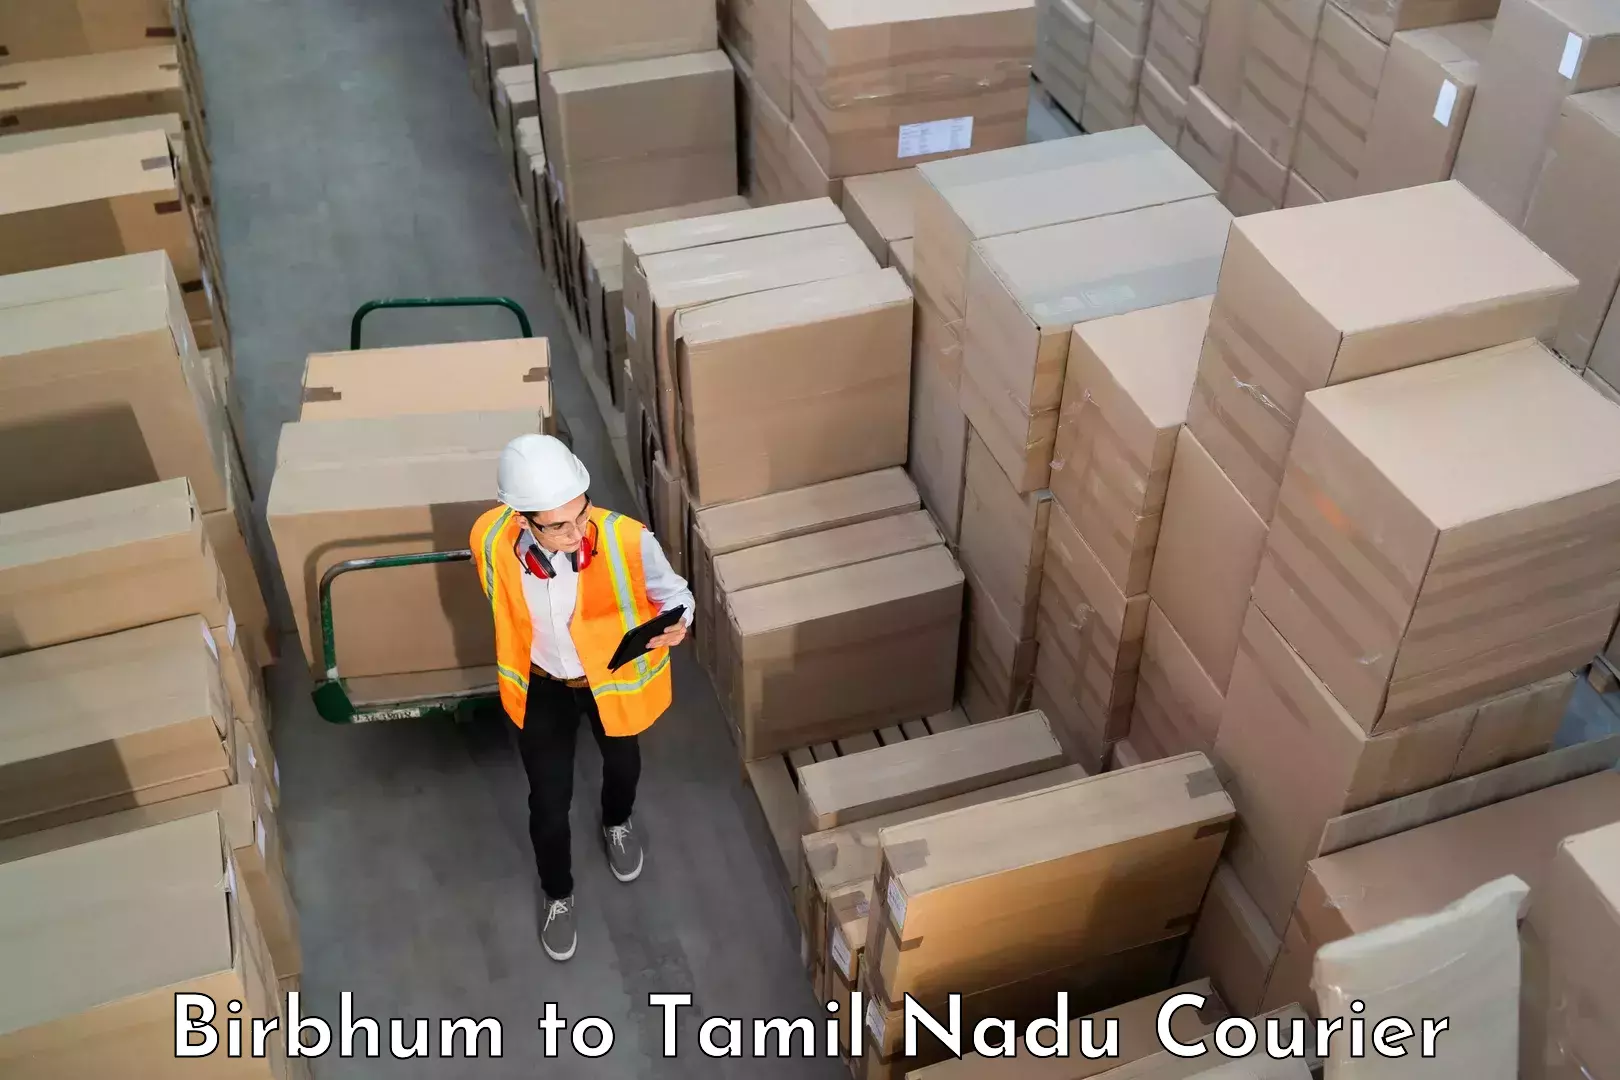 Baggage delivery technology Birbhum to Tirukkoyilur